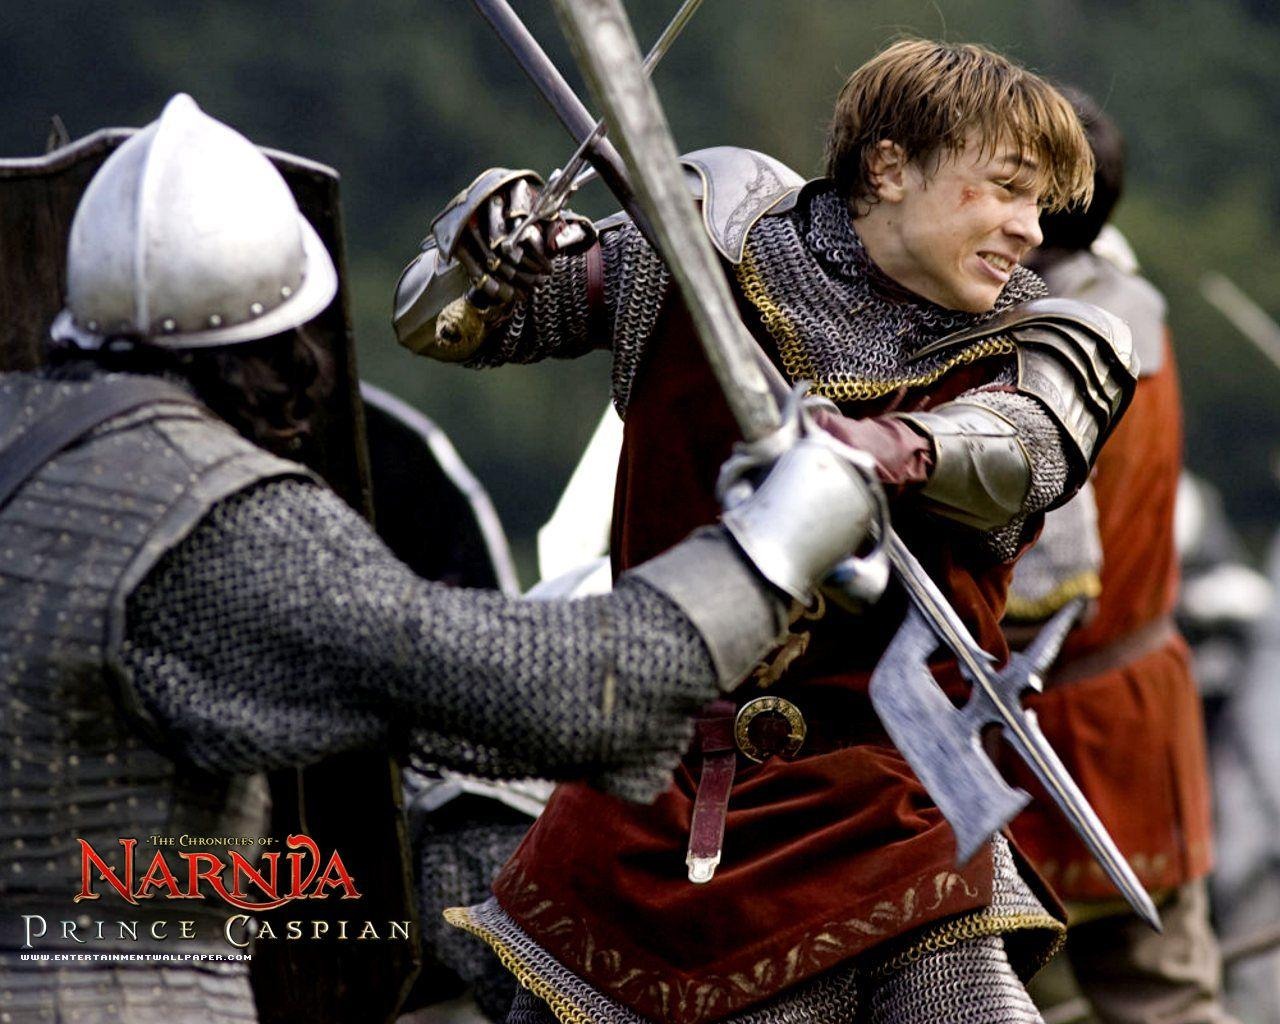 Le Monde de Narnia 2: Prince Caspian #6 - 1280x1024